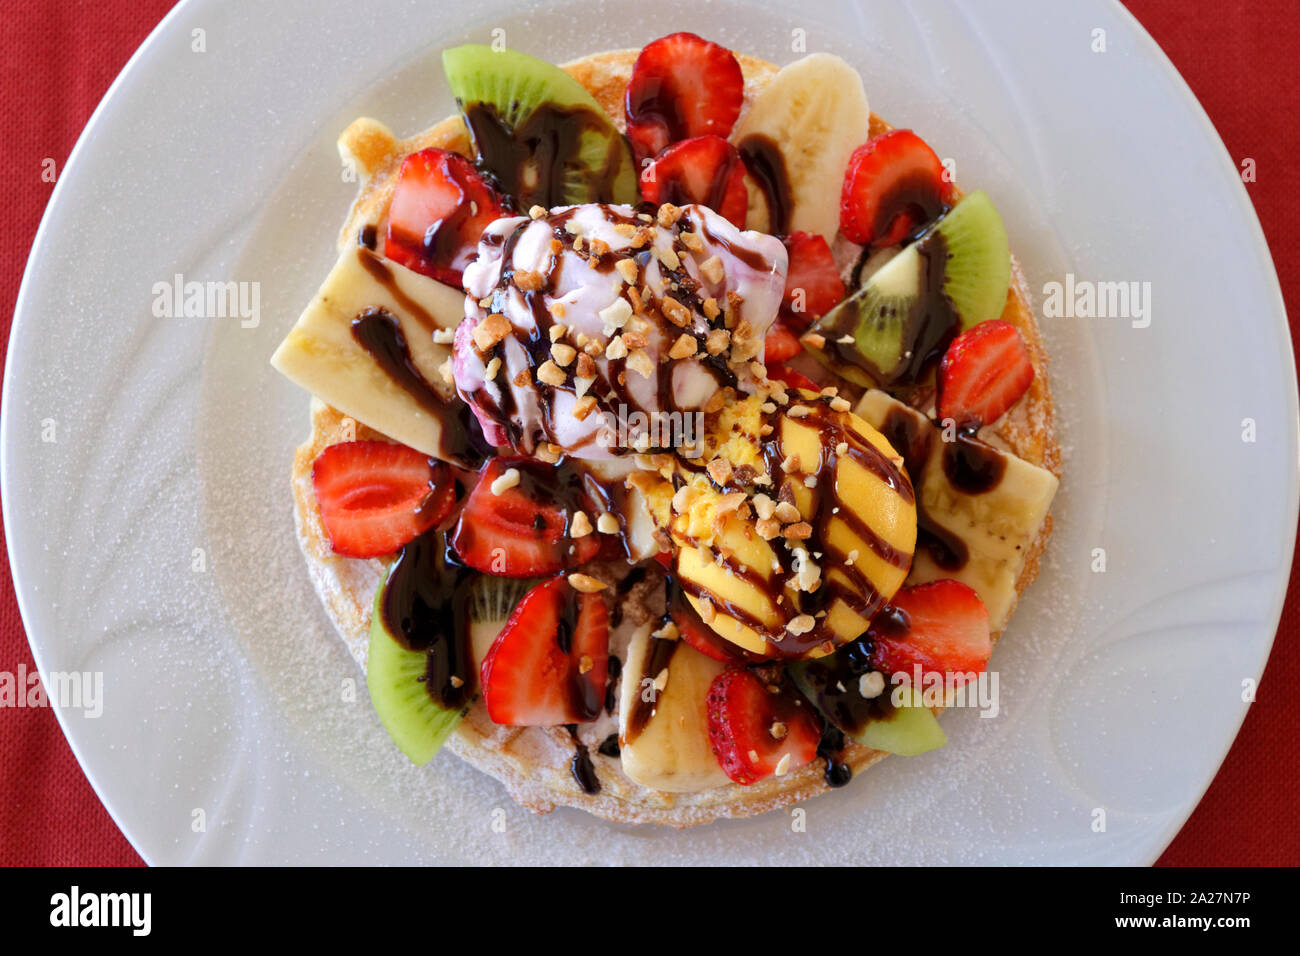 Ice Cream and Fruit Waffle. Stock Photo